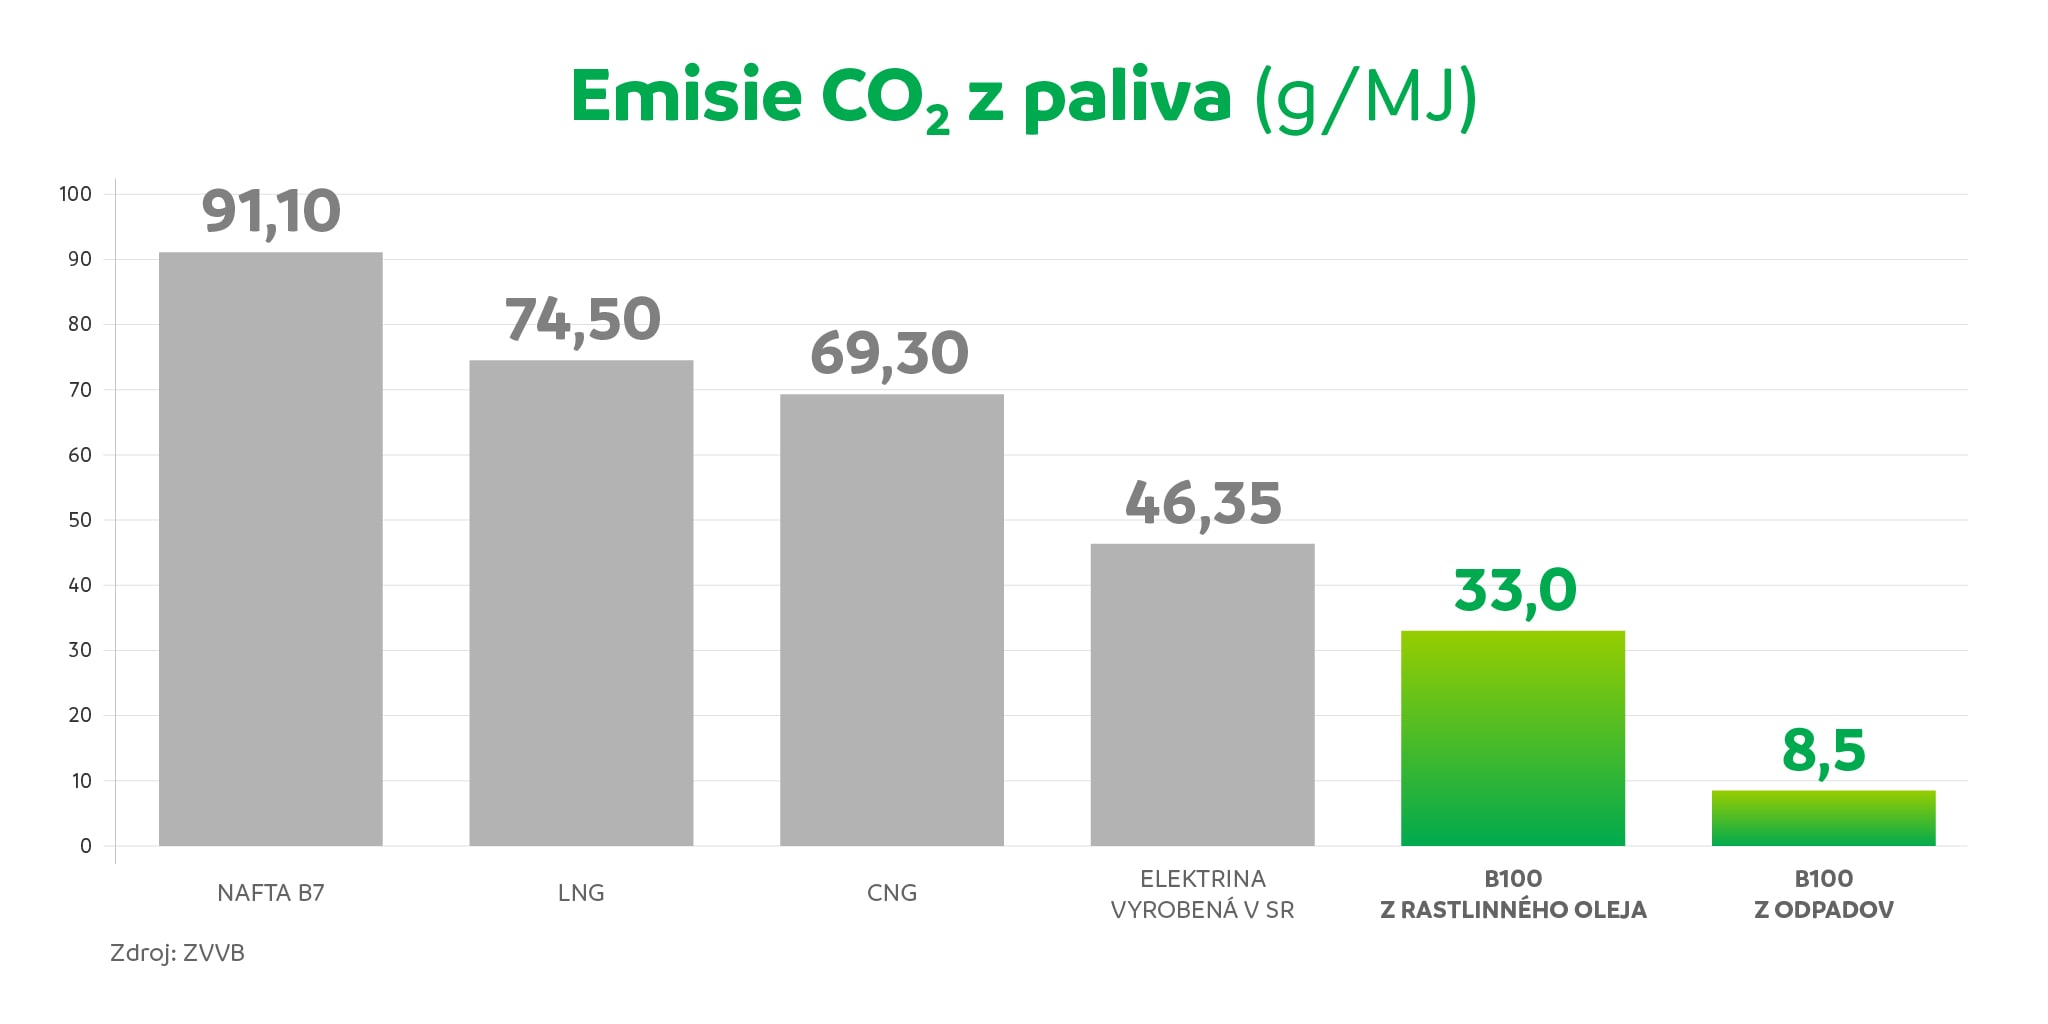 Emisie CO2 z paliva